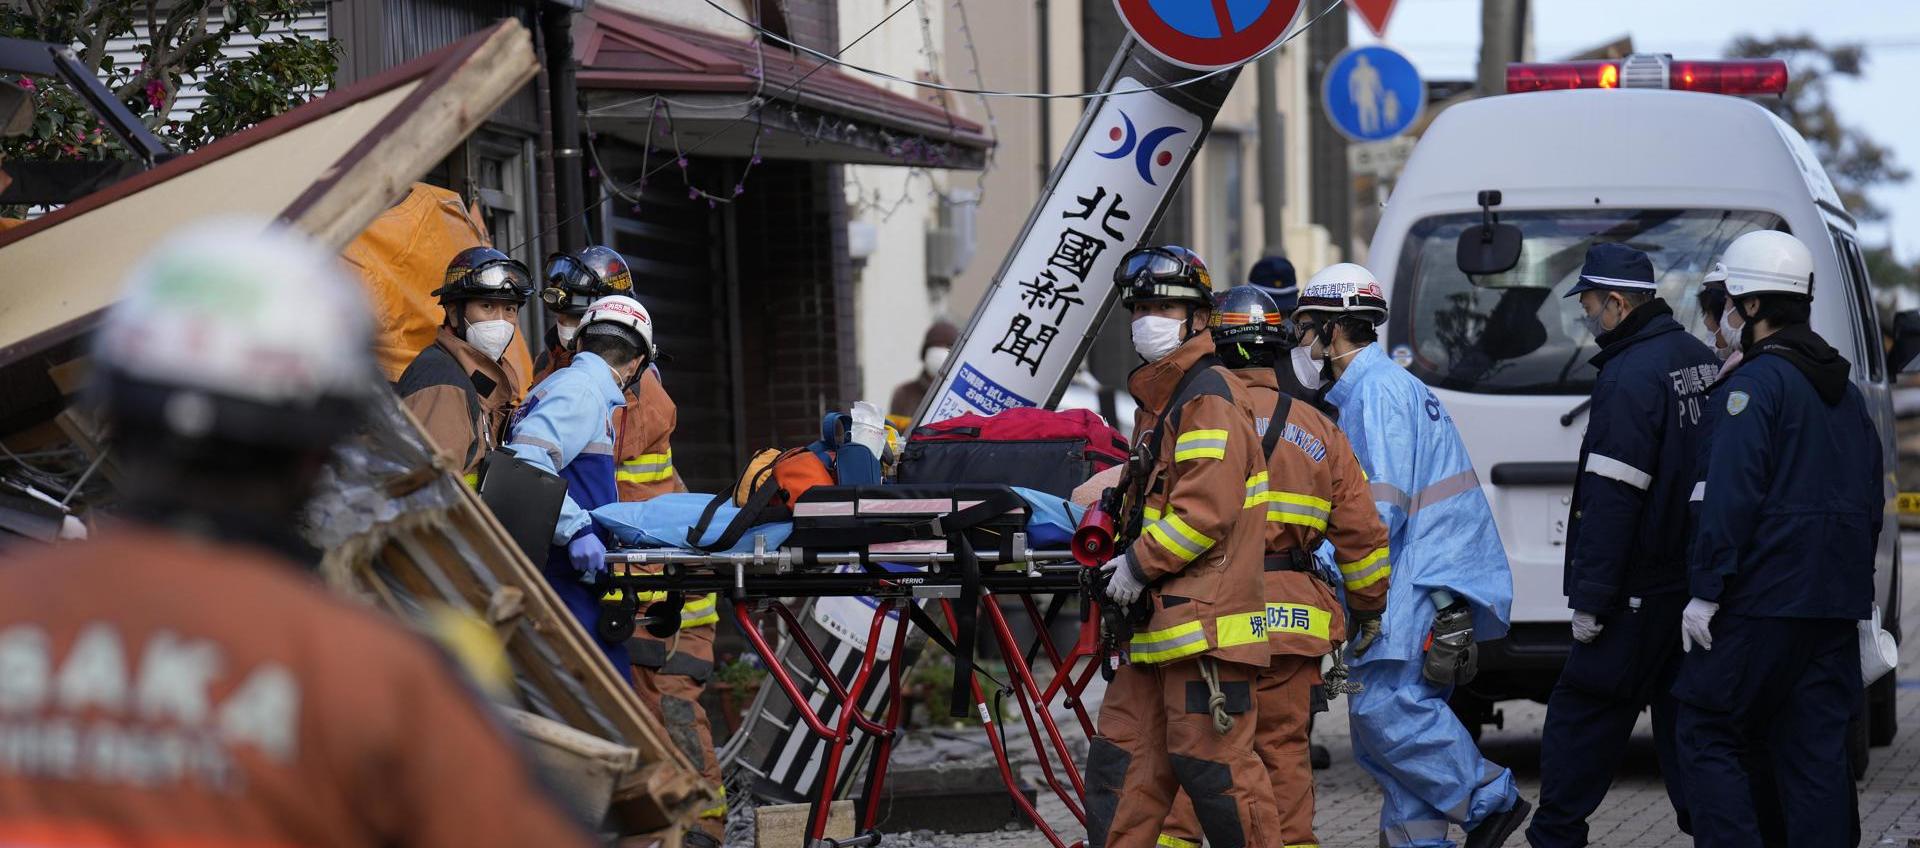 Equipos de rescate realizan una operación en una casa derrumbada tras un terremoto en Wajima, prefectura de Ishikawa (Japón).